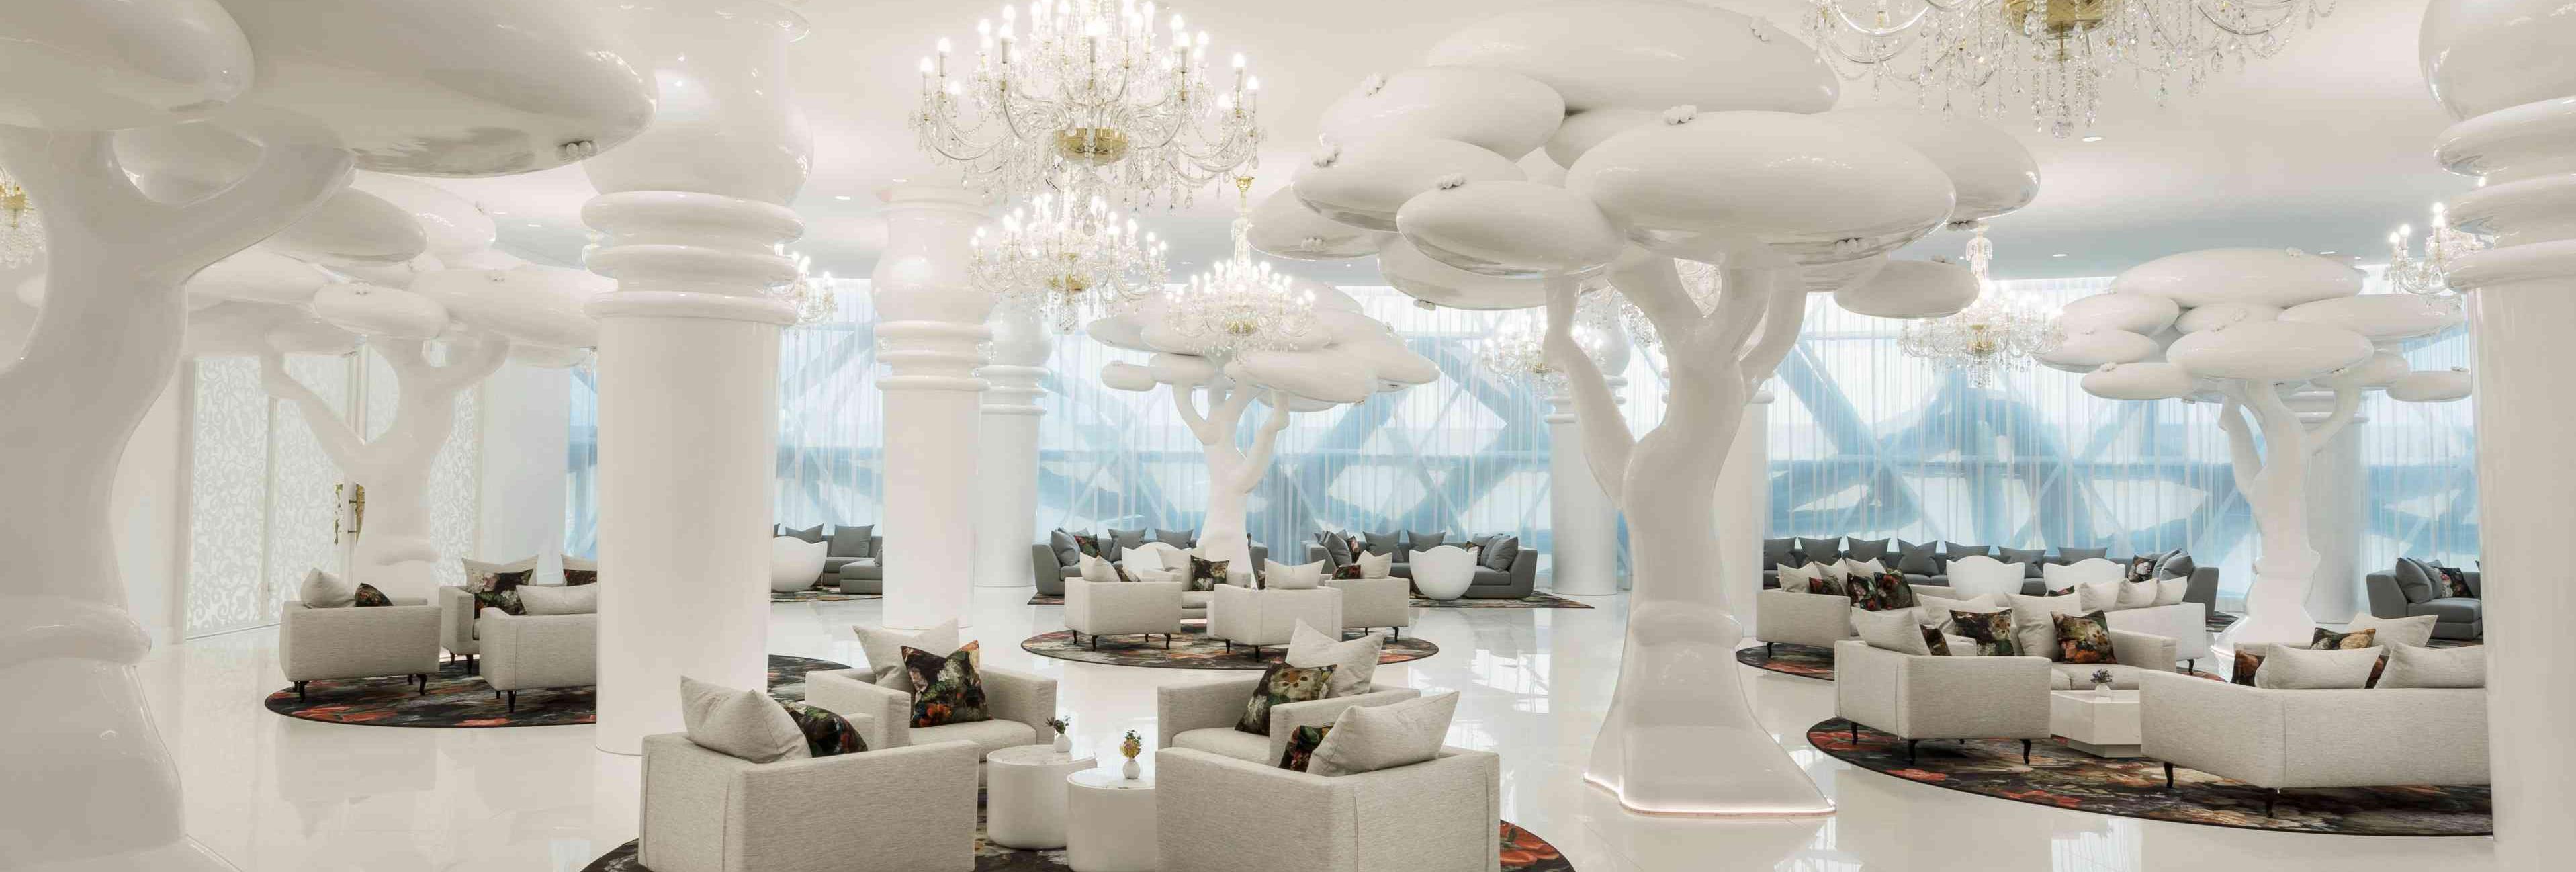 The lobby at Mondrian Doha